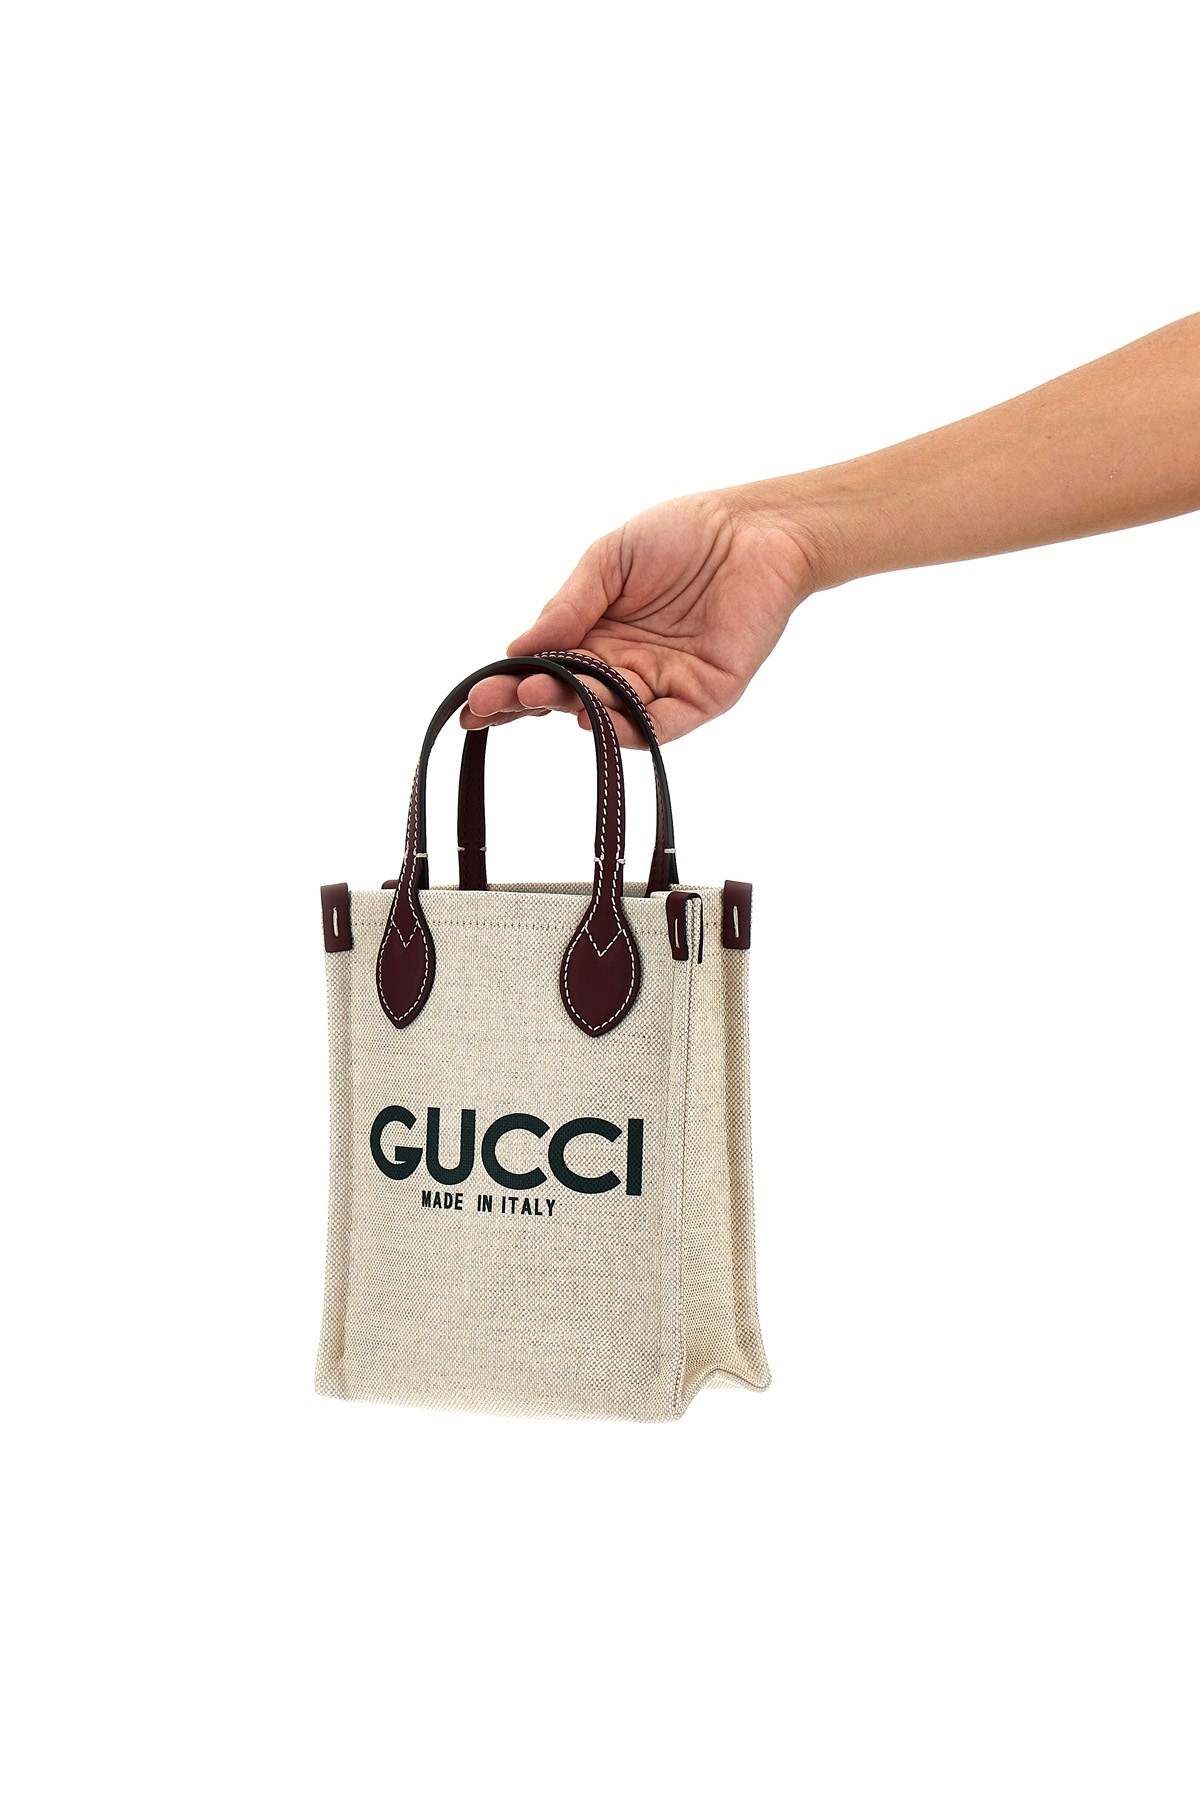 'Gucci' handbag - 2